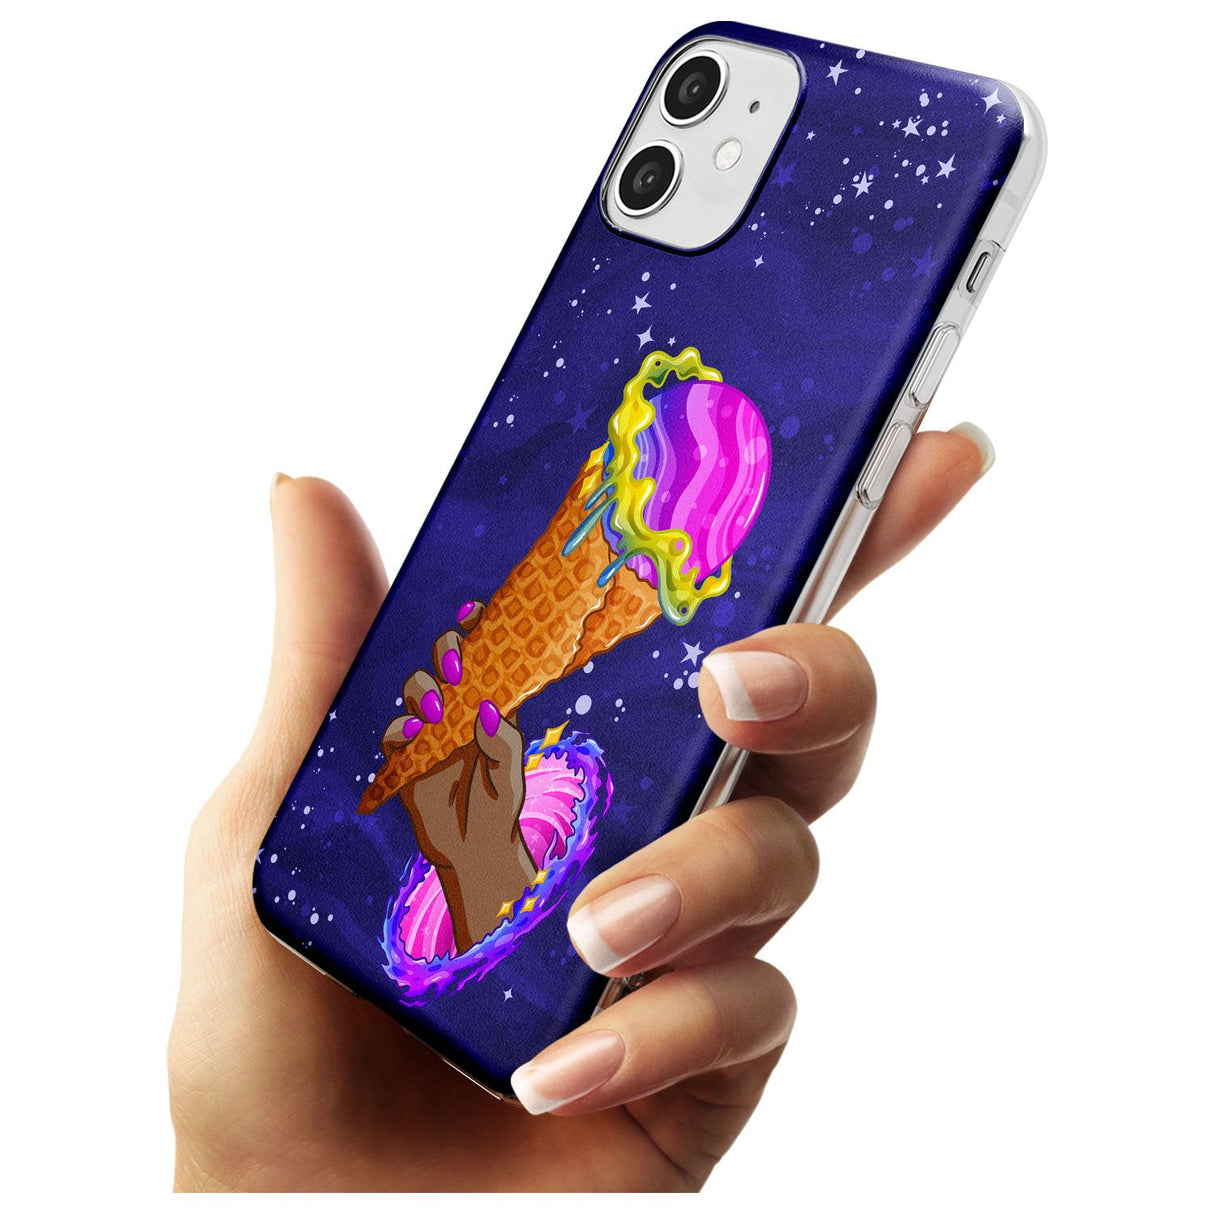 Interdimensional Ice Cream Slim TPU Phone Case for iPhone 11